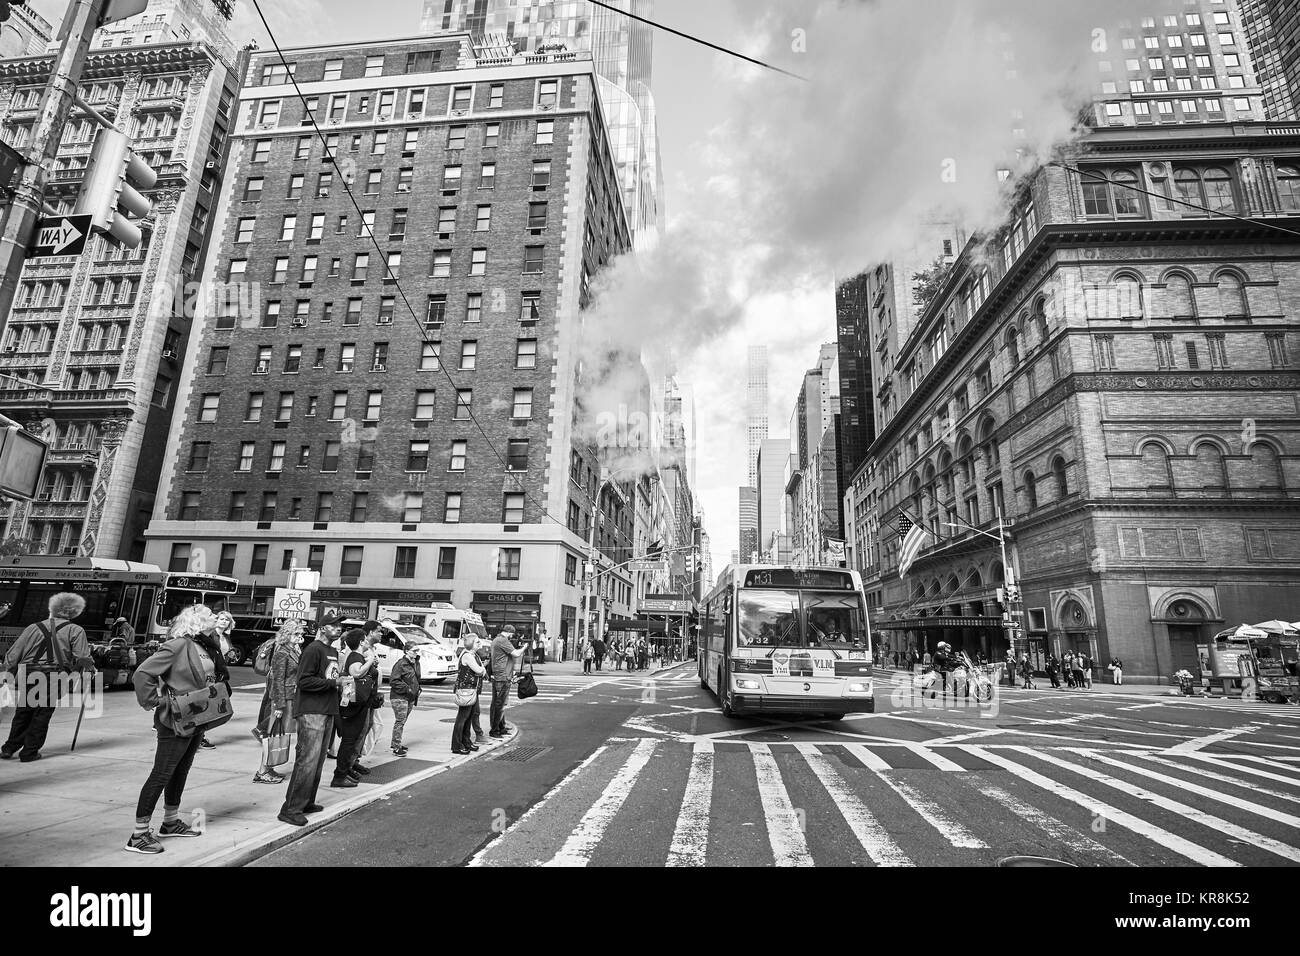 New York, Stati Uniti d'America - 26 Maggio 2017: la gente in attesa di attraversare la strada alla settima avenue e West 57th Street intersezione. Foto Stock